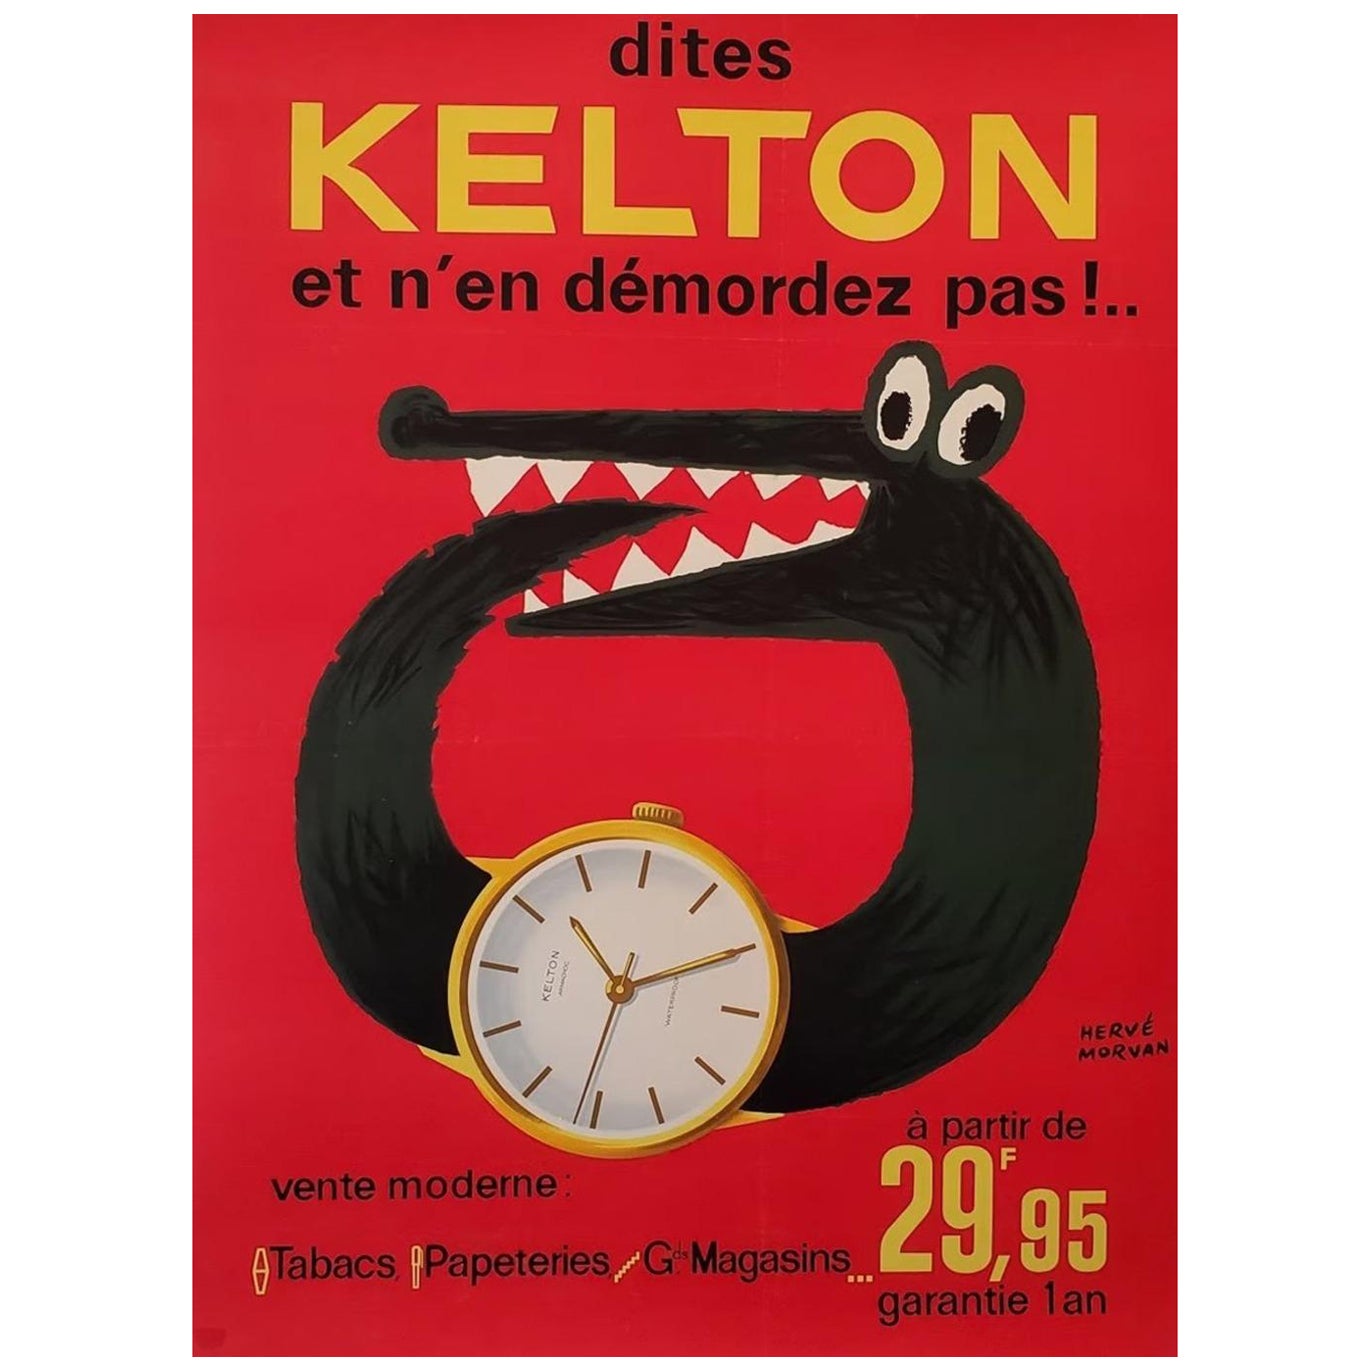 1955 Kelton - Herve Morvan Original Vintage Poster For Sale